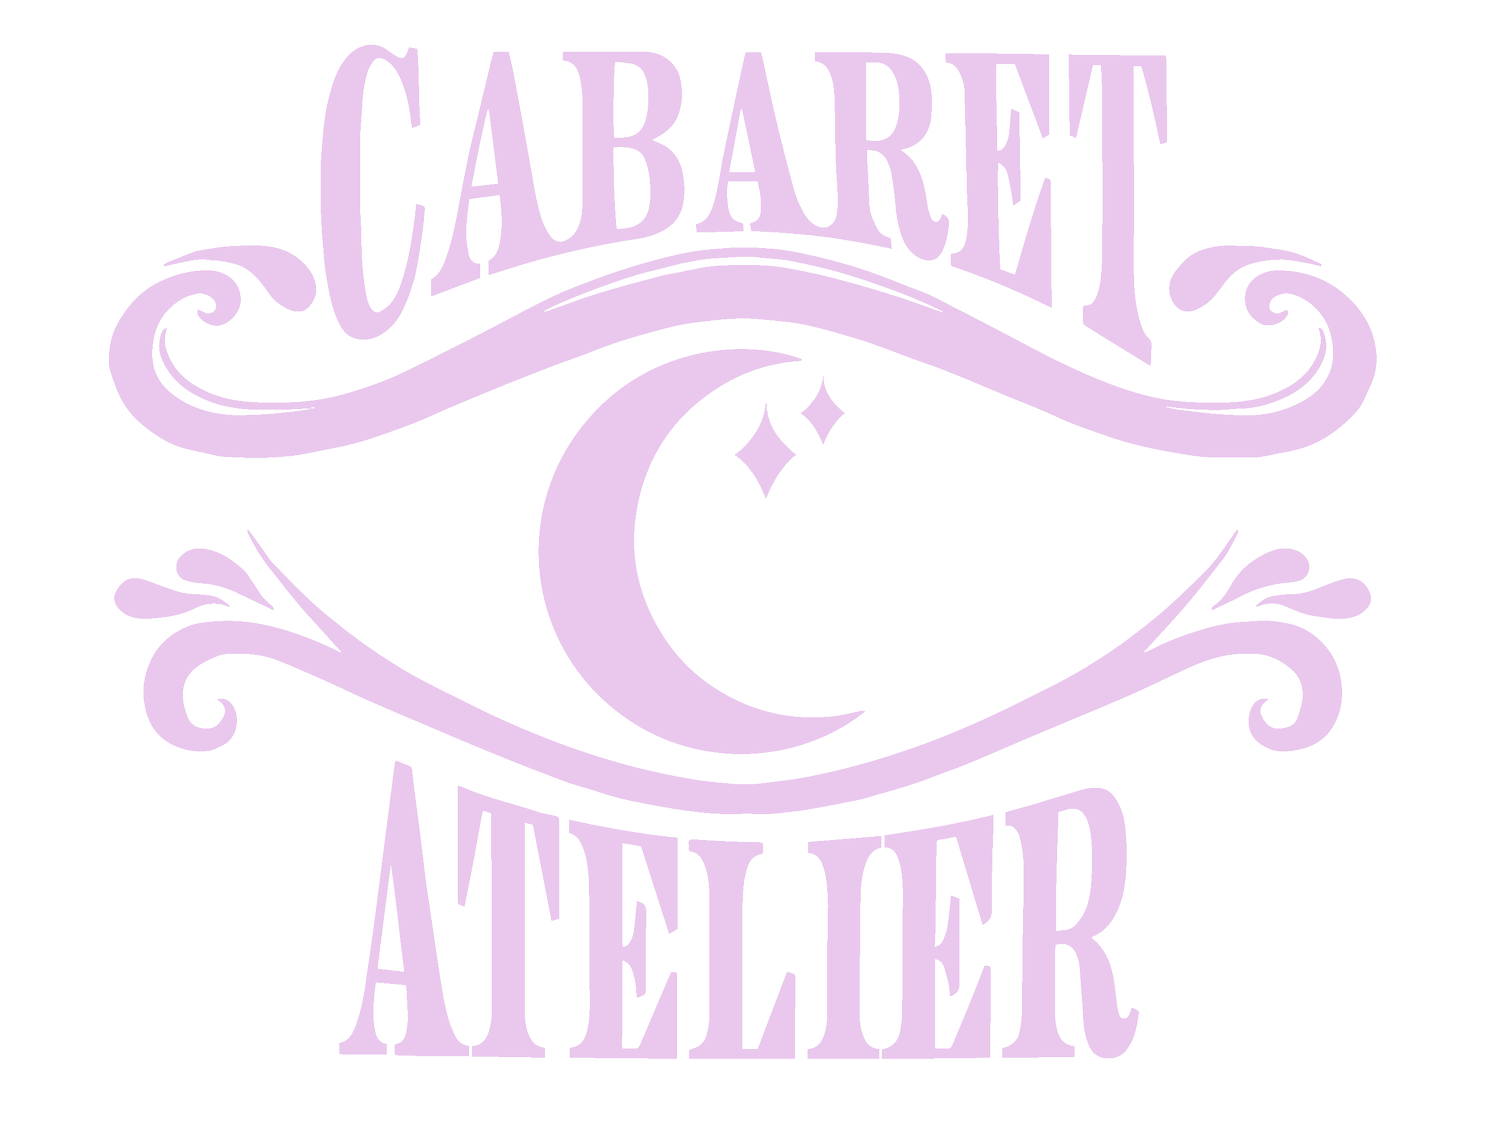 Cabaret Atelier